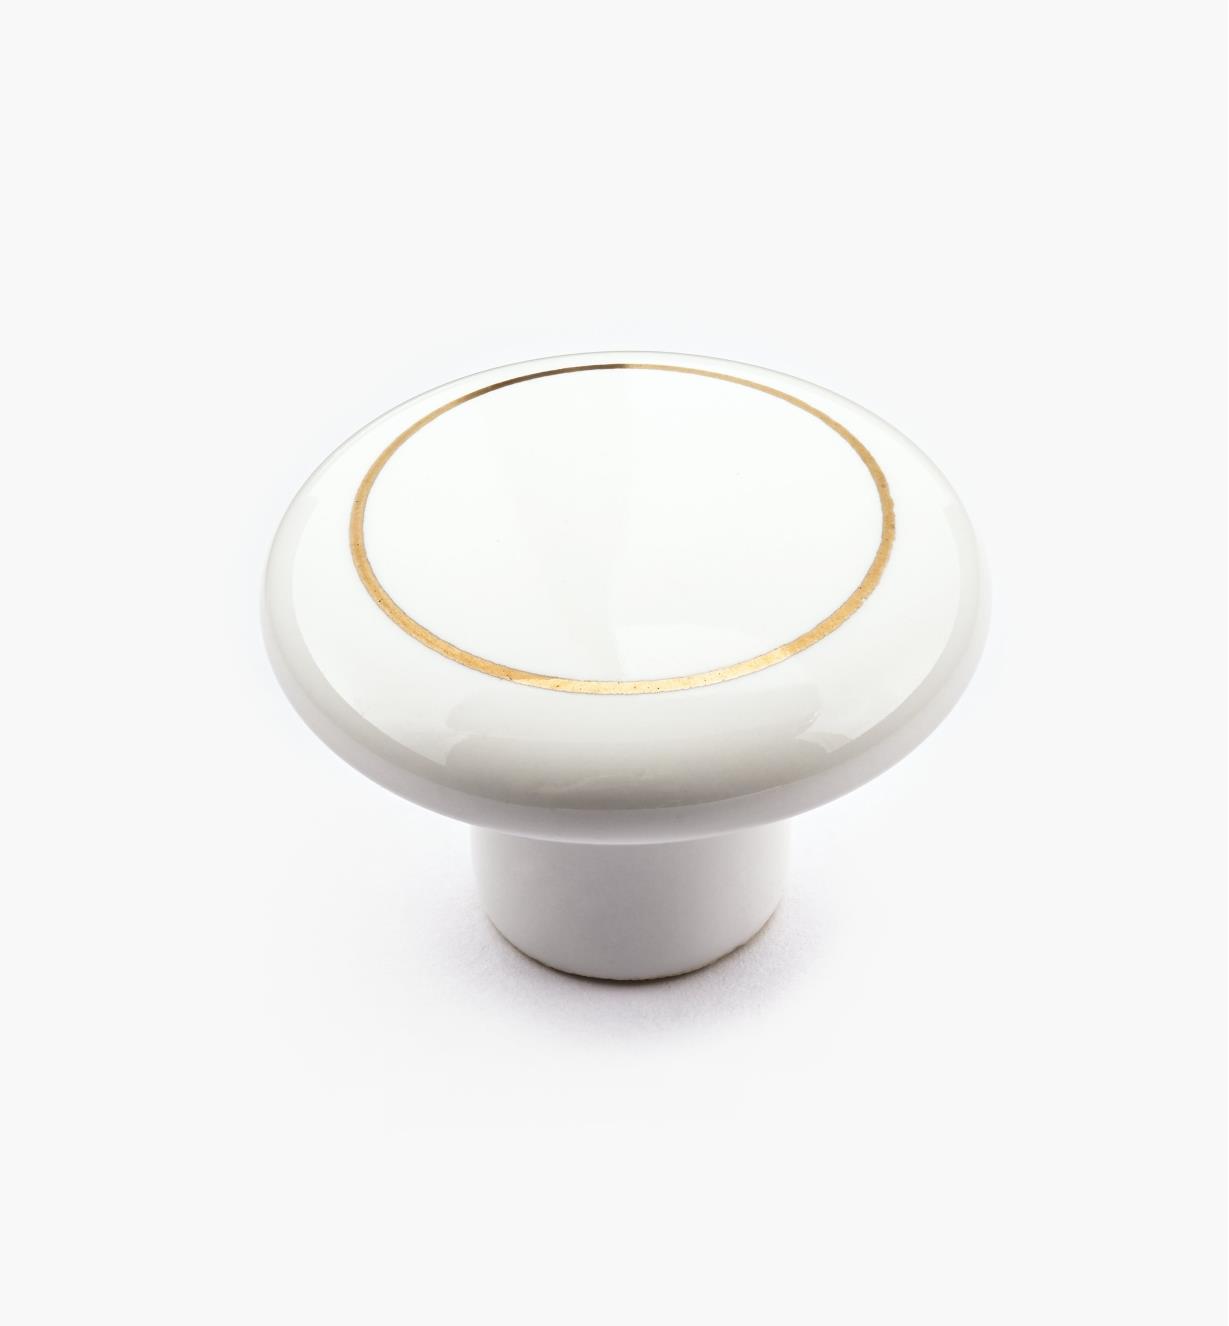 00W2808 - Bouton en céramique classique, blanc et or, 1 1/2 po x 1 po